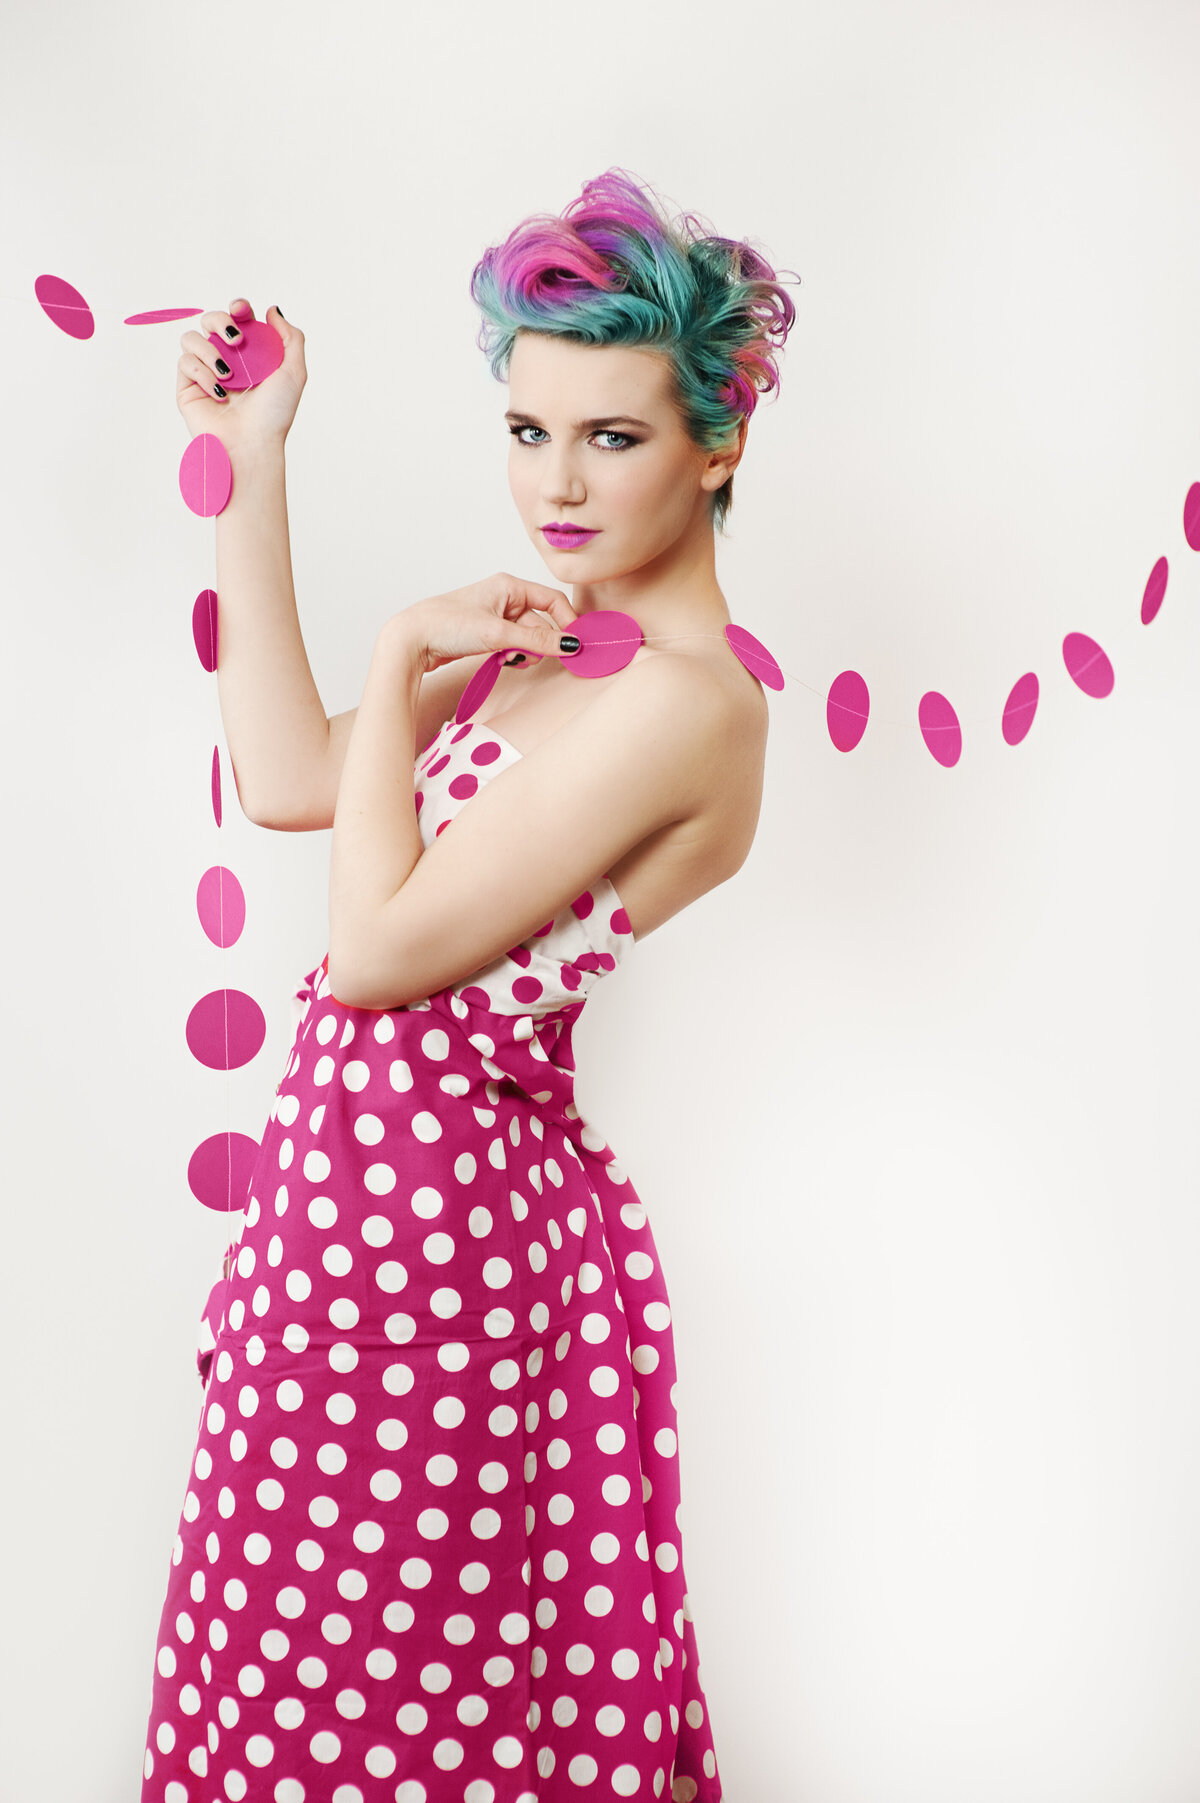 senior girl in polka dot dress with rainbow hair